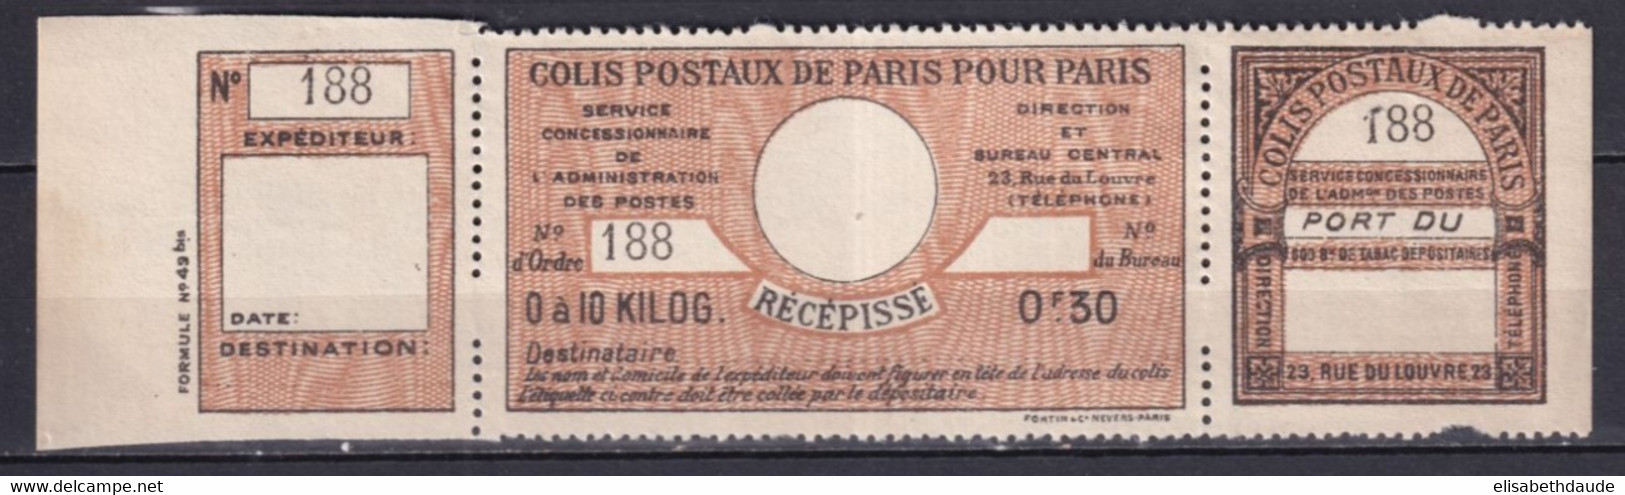 COLIS POSTAUX PARIS POUR PARIS  - 1917 - MAURY N°42 (*) NSG RARE COMPLET ! - COTE 2009 = 150 EUR. - Nuevos